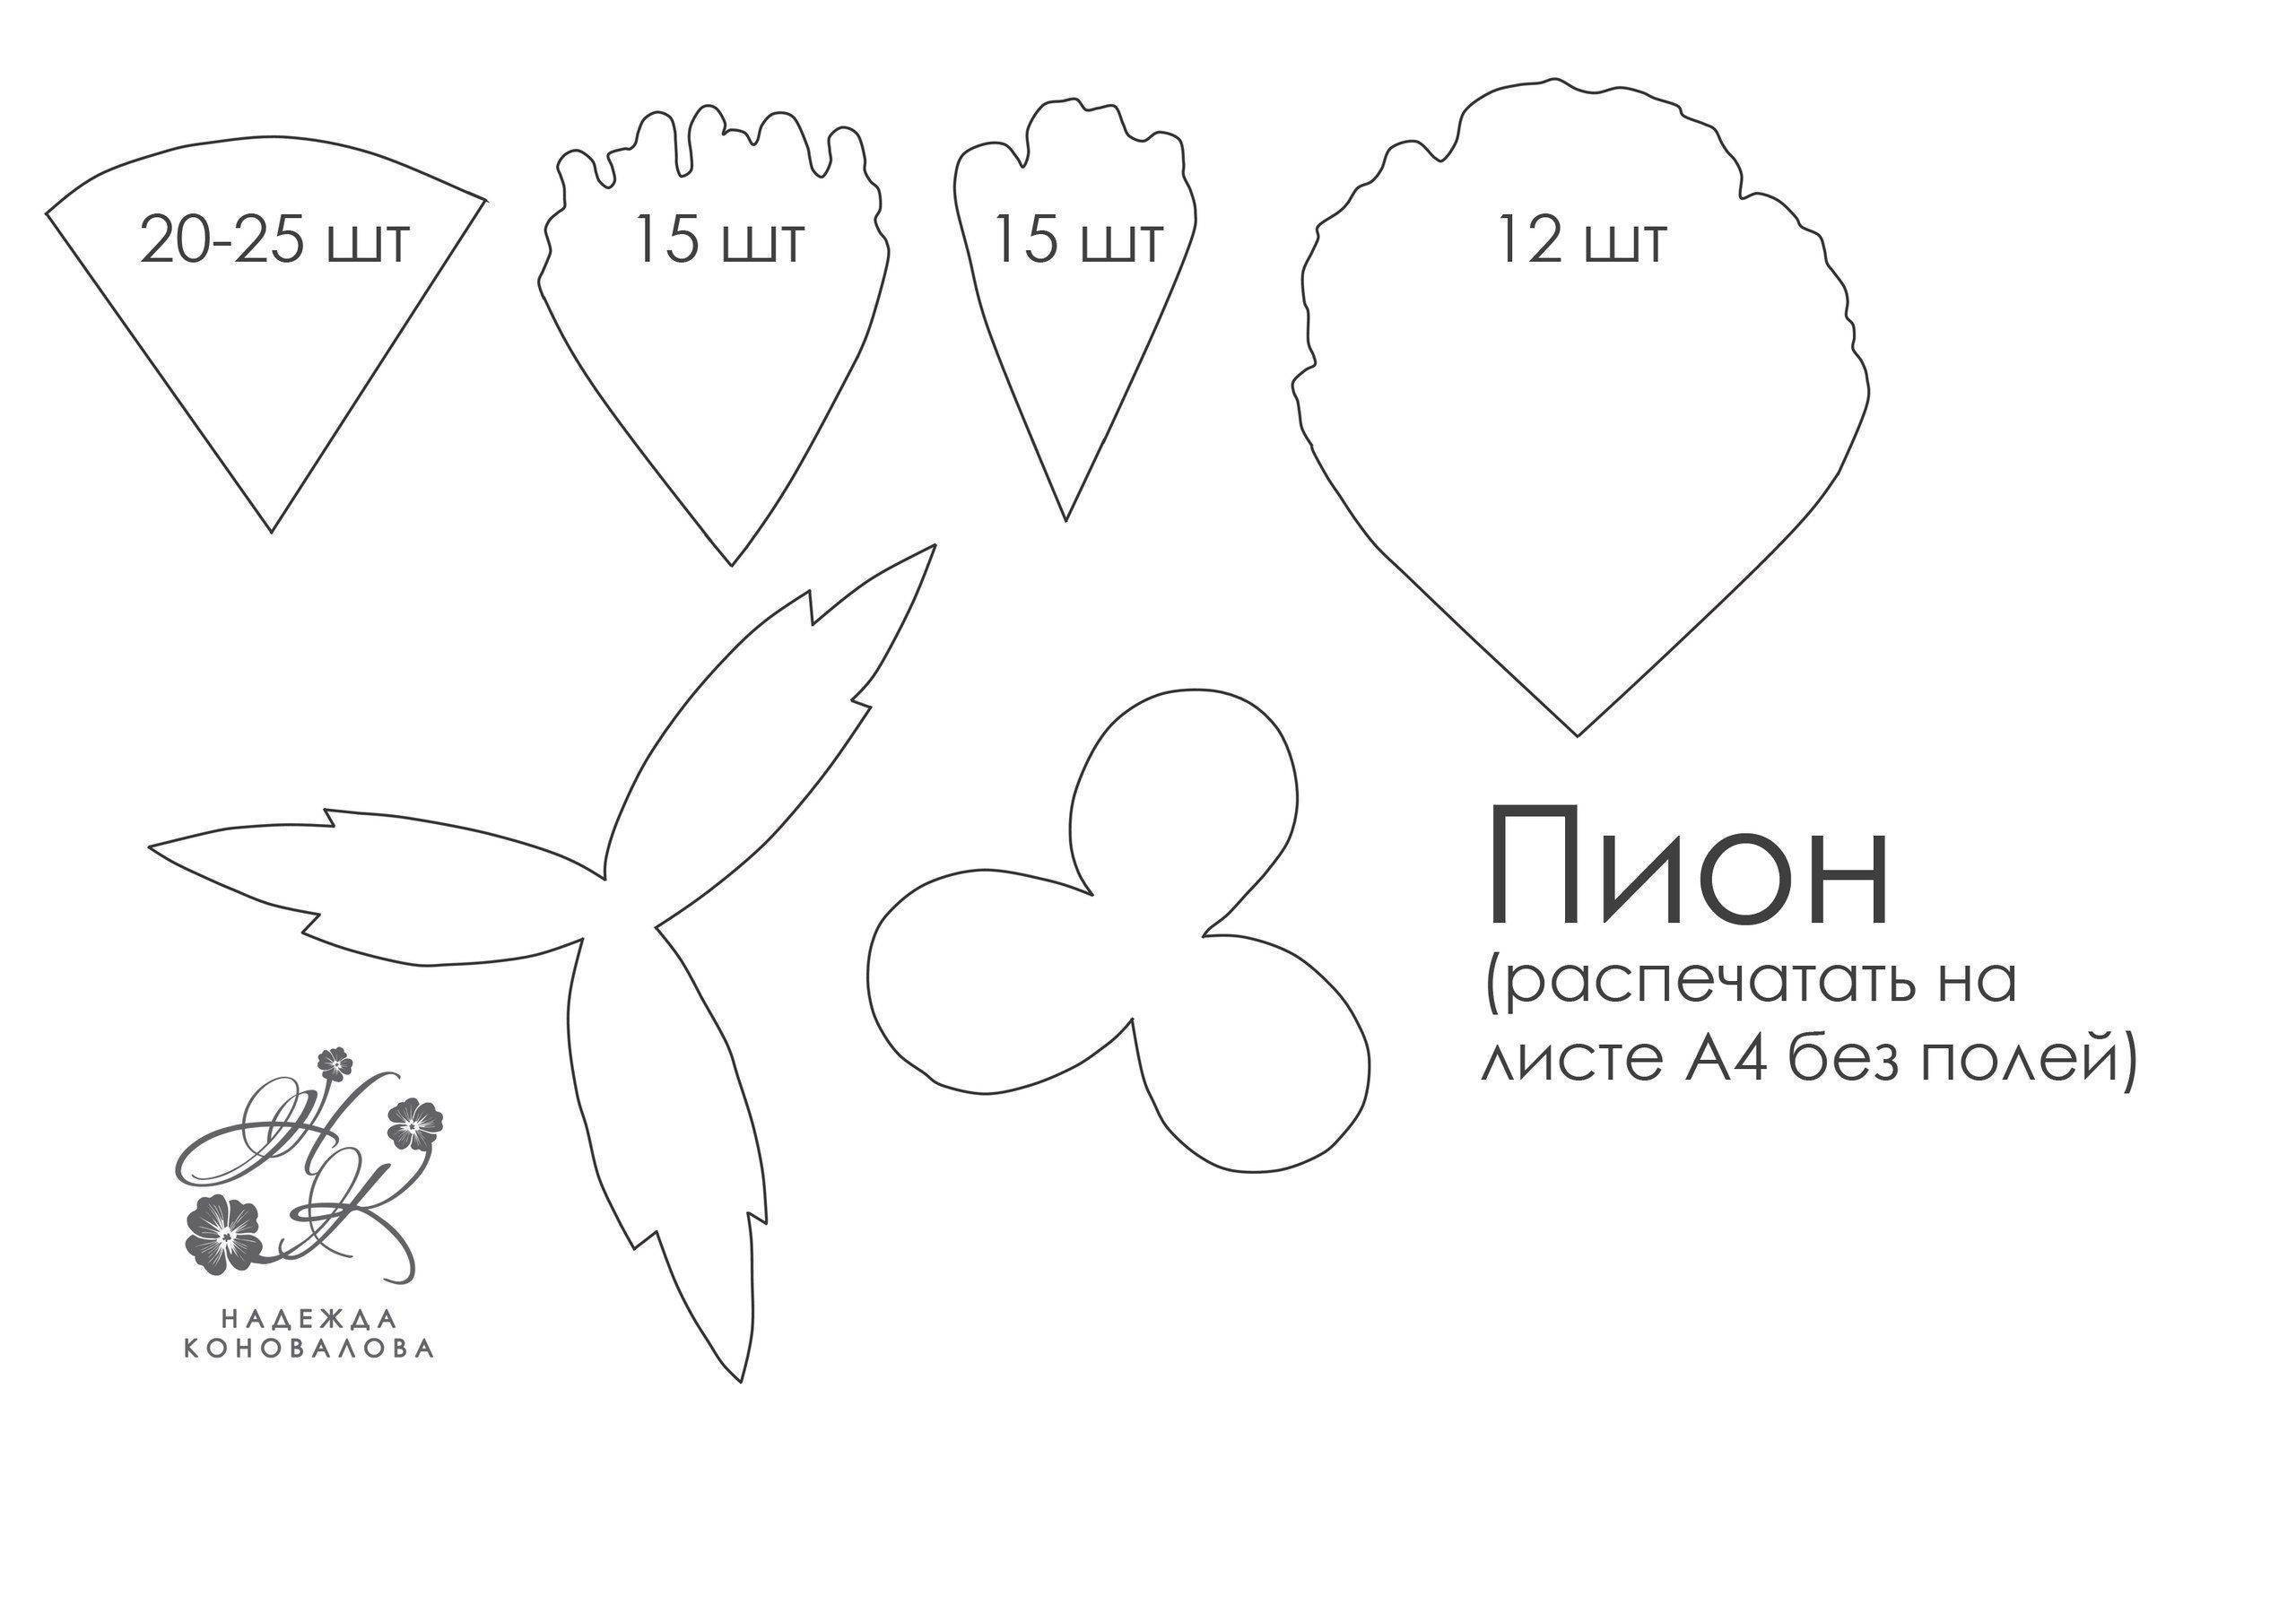 Орхидея своими руками: поэтапное руководство по созданию и применению декоративного цветка